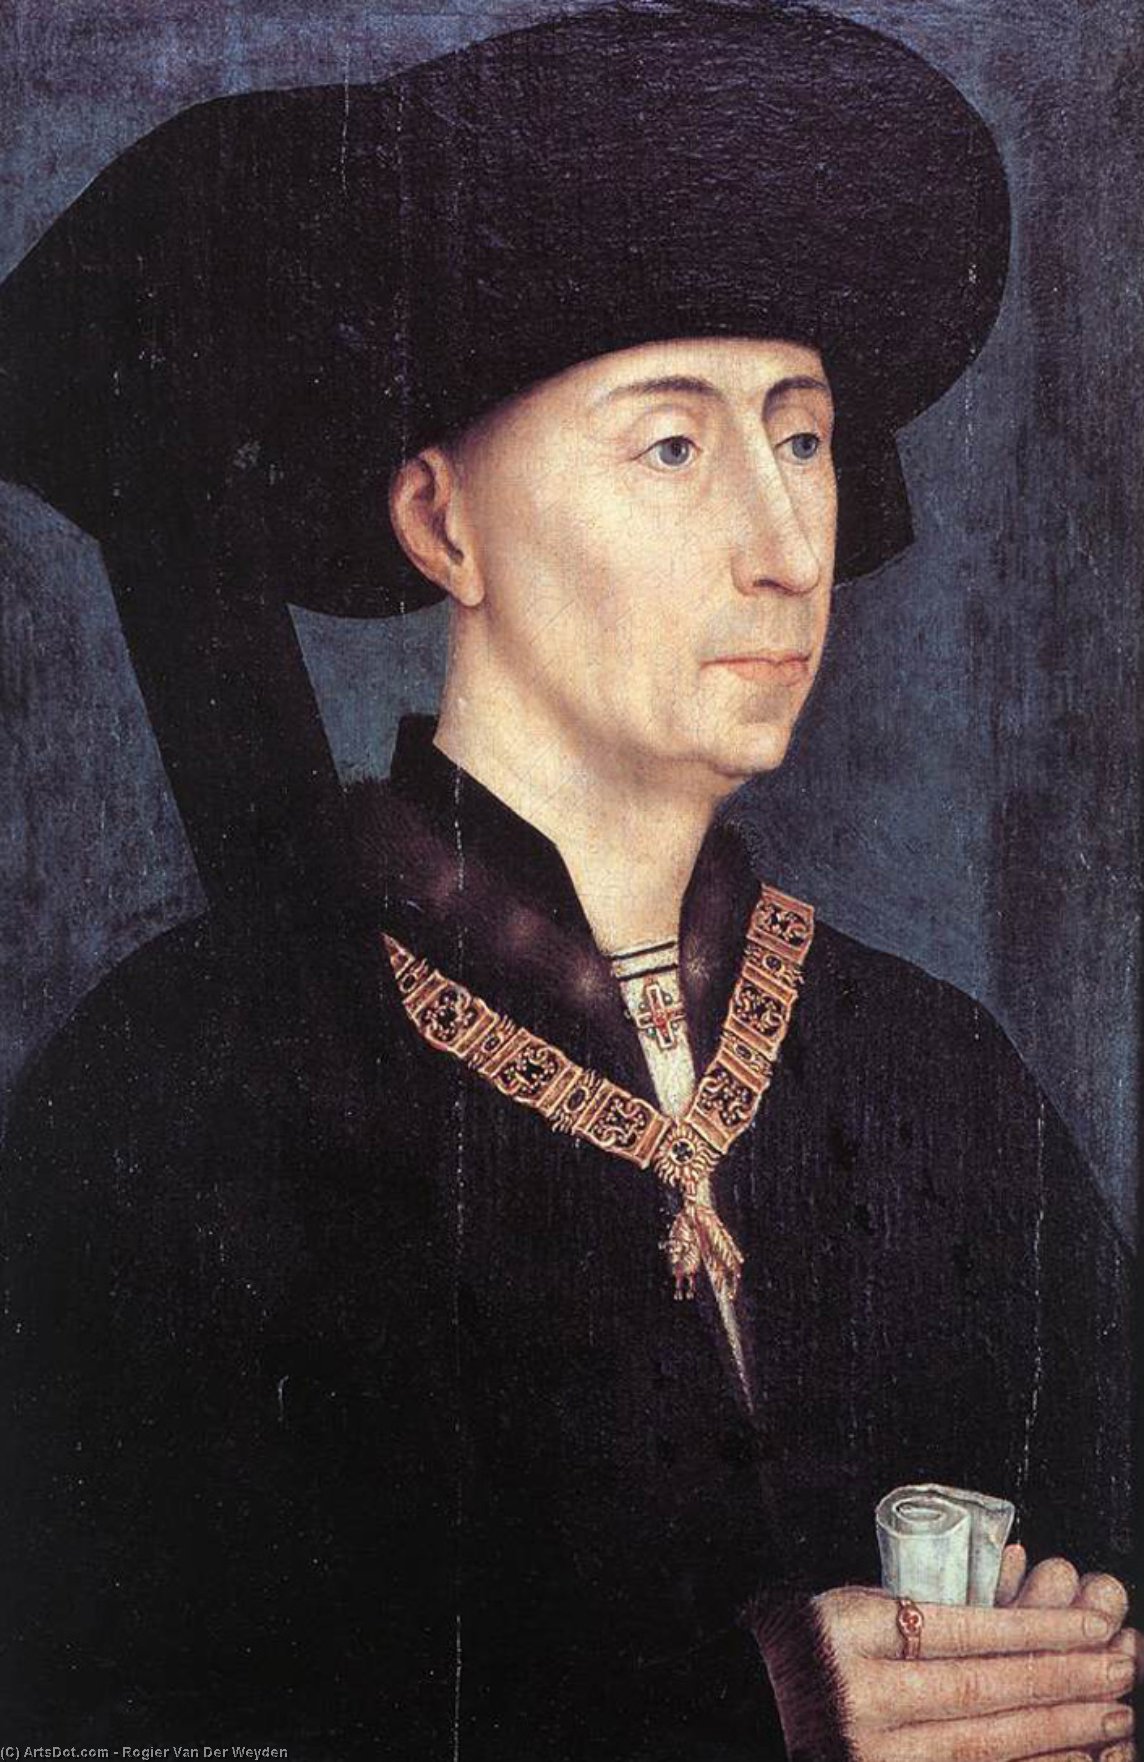 Achat Reproductions De Qualité Musée Portrait de Philippe le Bon de Rogier Van Der Weyden (1400-1464, Belgium) | ArtsDot.com